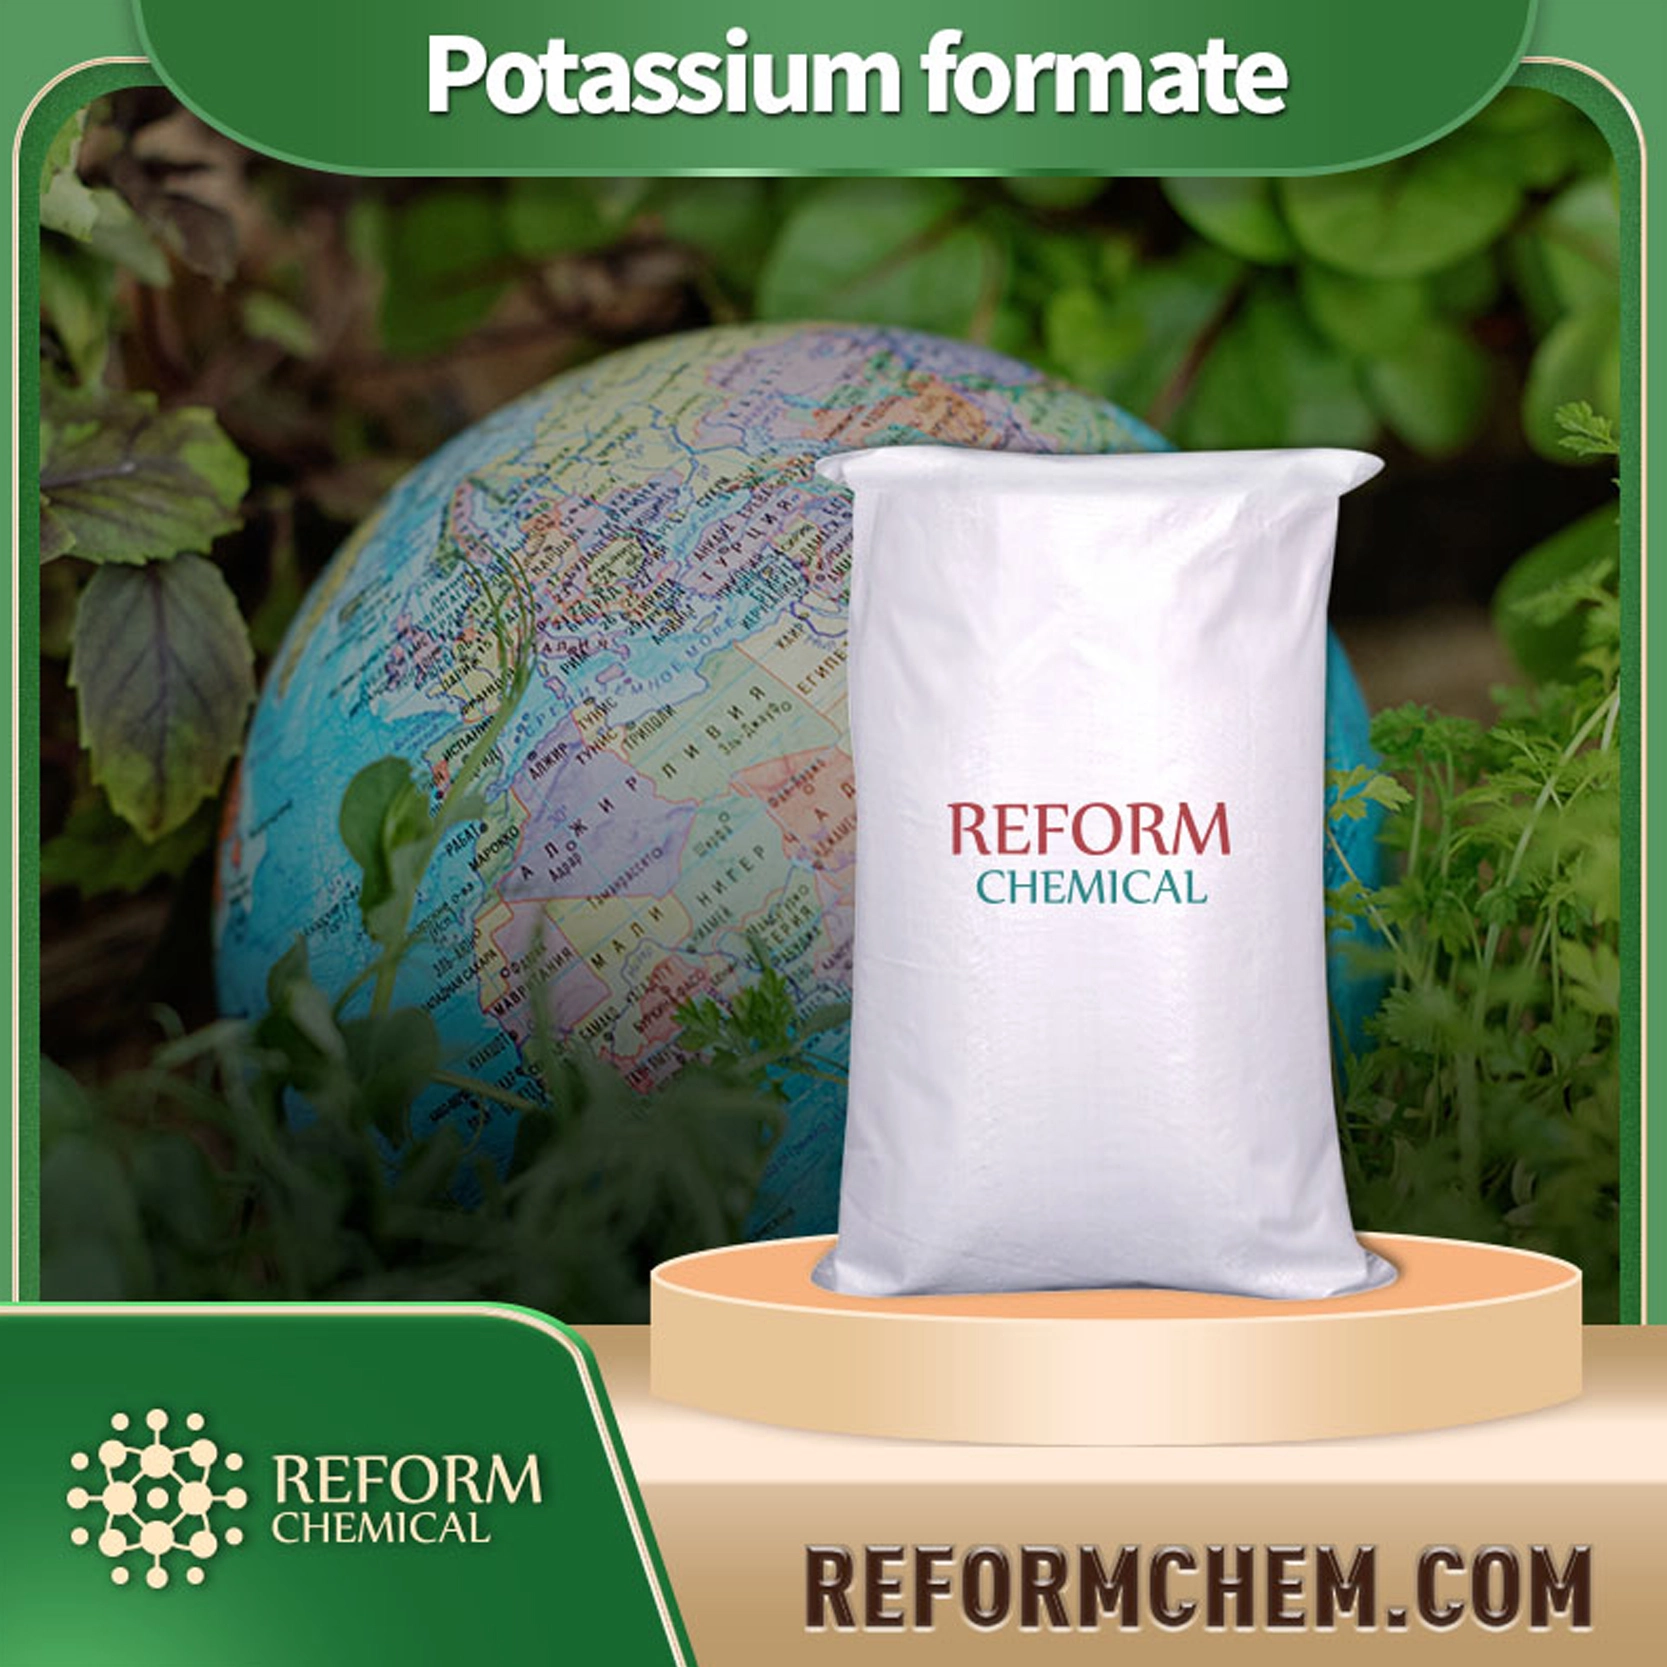 Potassium formate